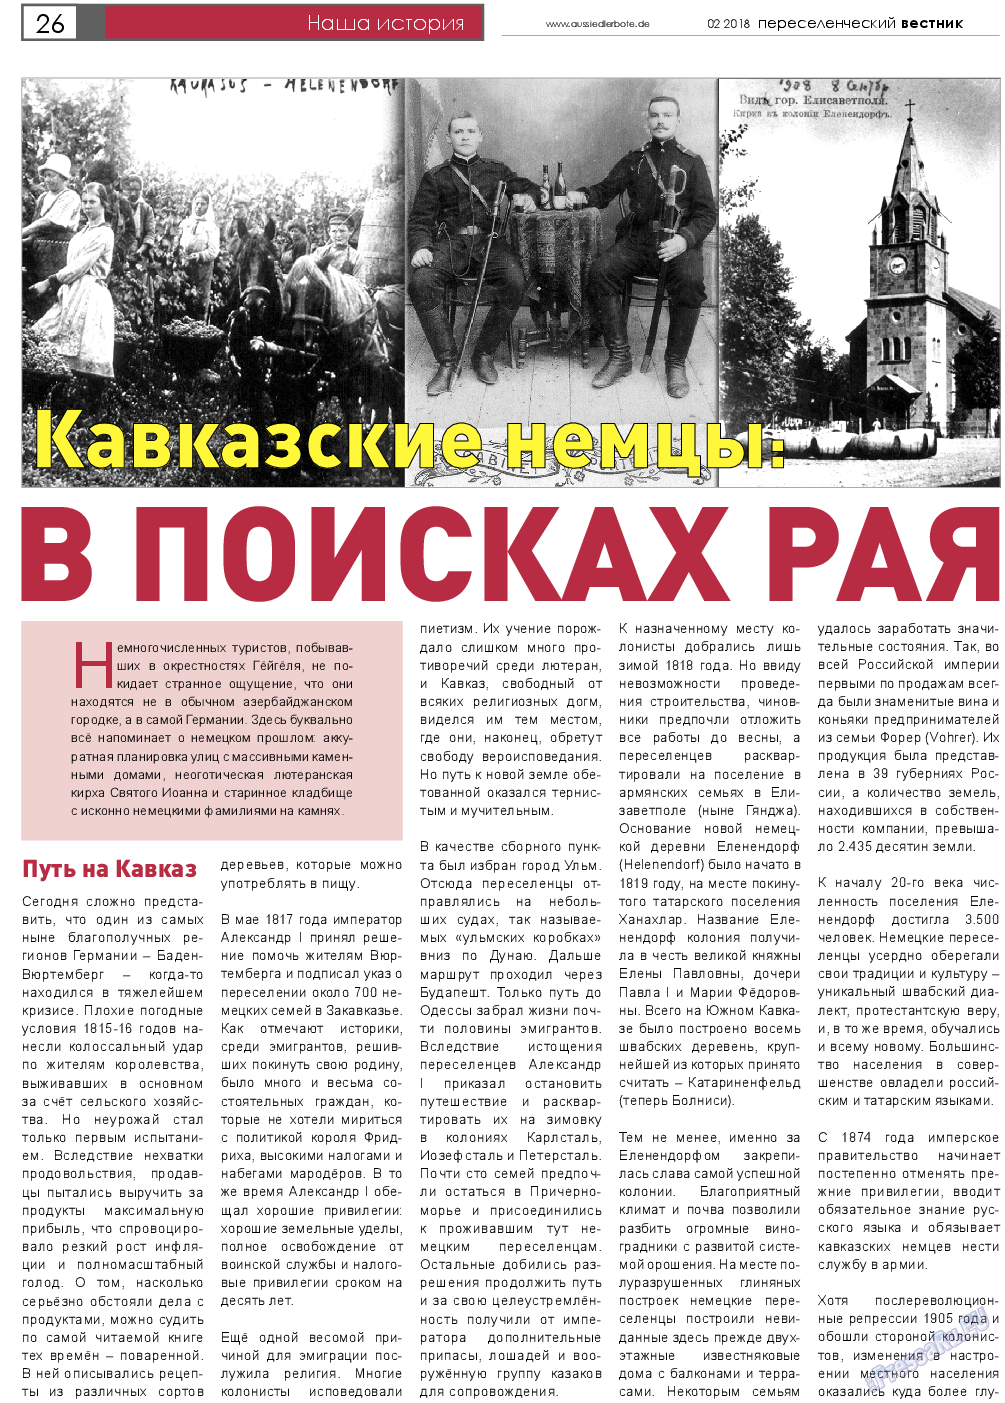 Переселенческий вестник, газета. 2018 №2 стр.26